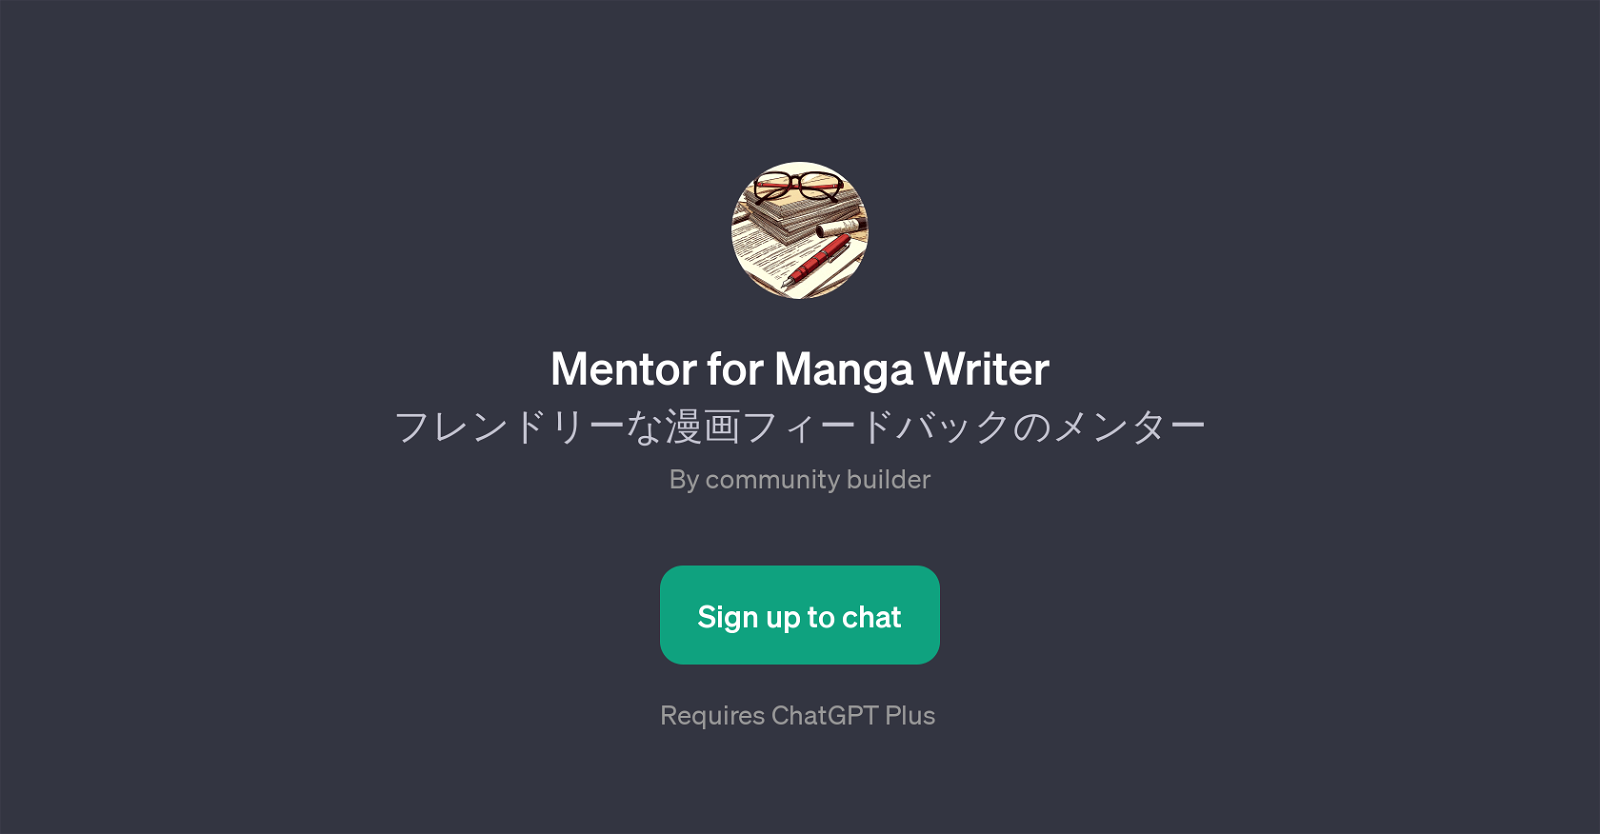 Mentor for Manga Writer website